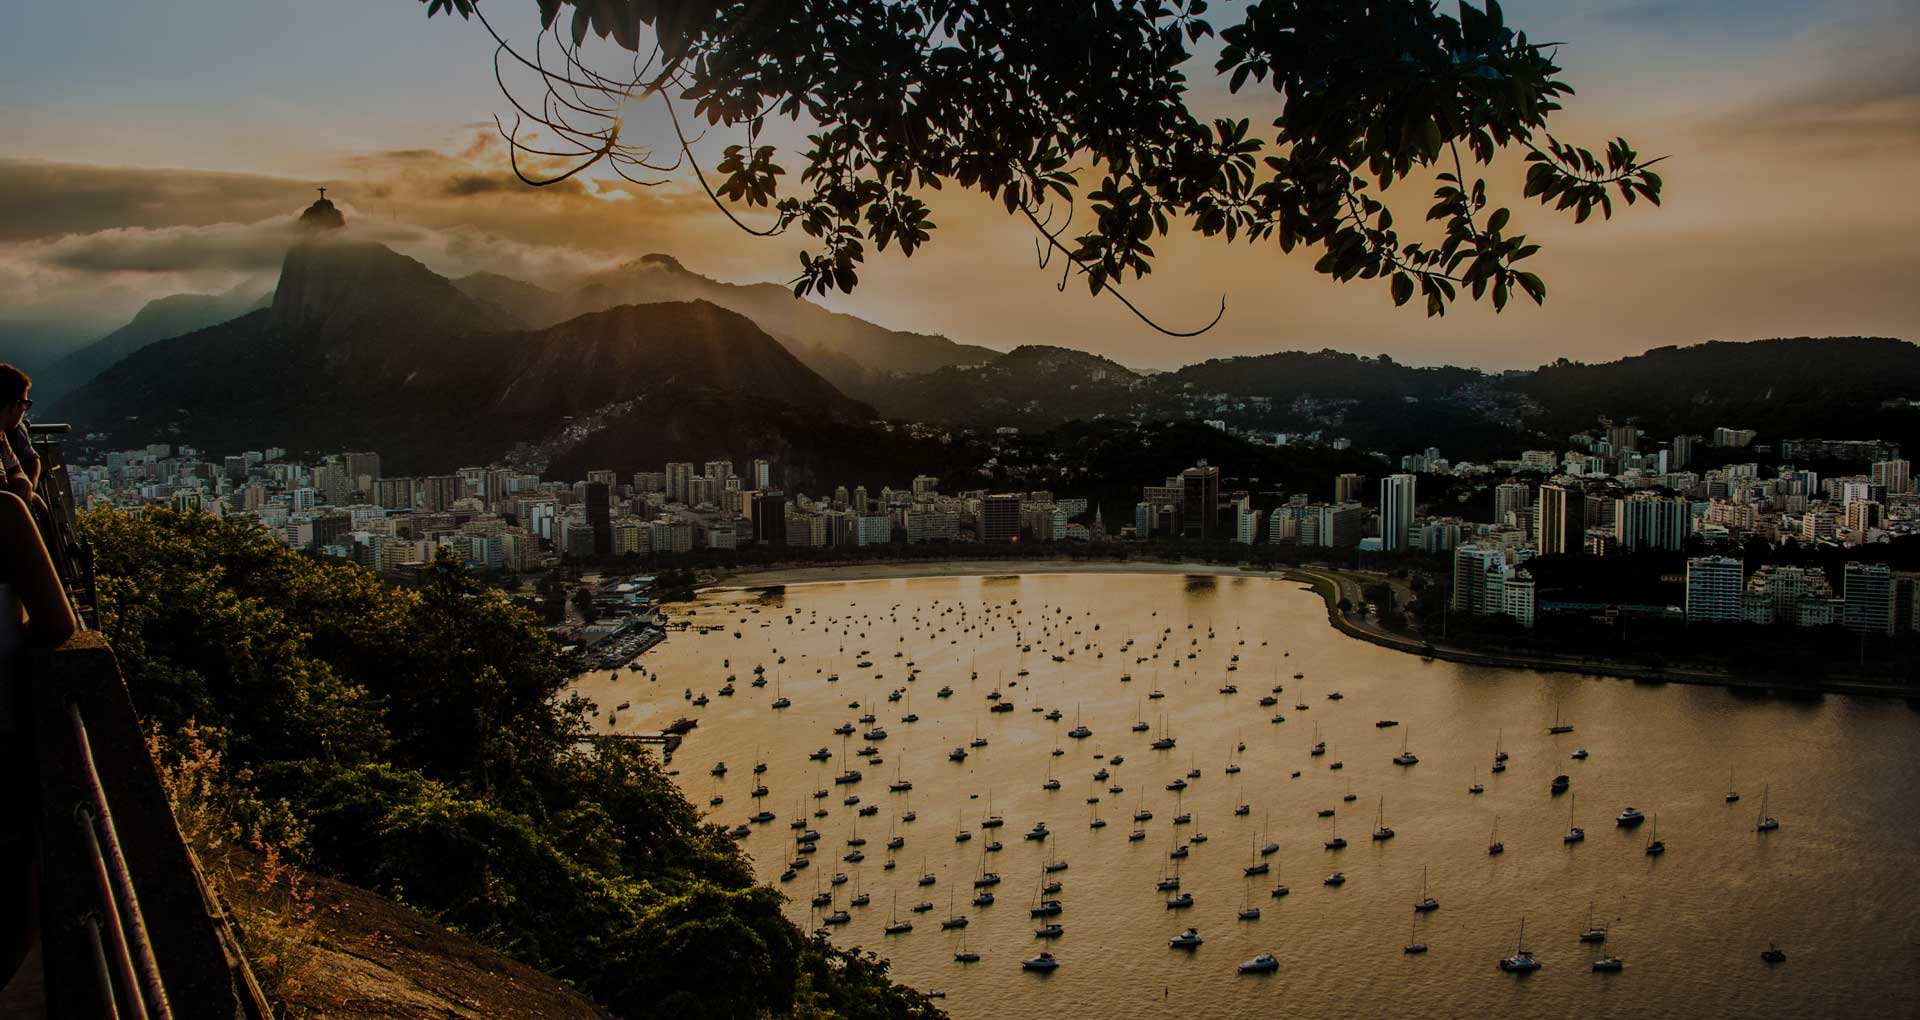 Brazilodge - O hostel mais confortável do Rio de Janeiro.